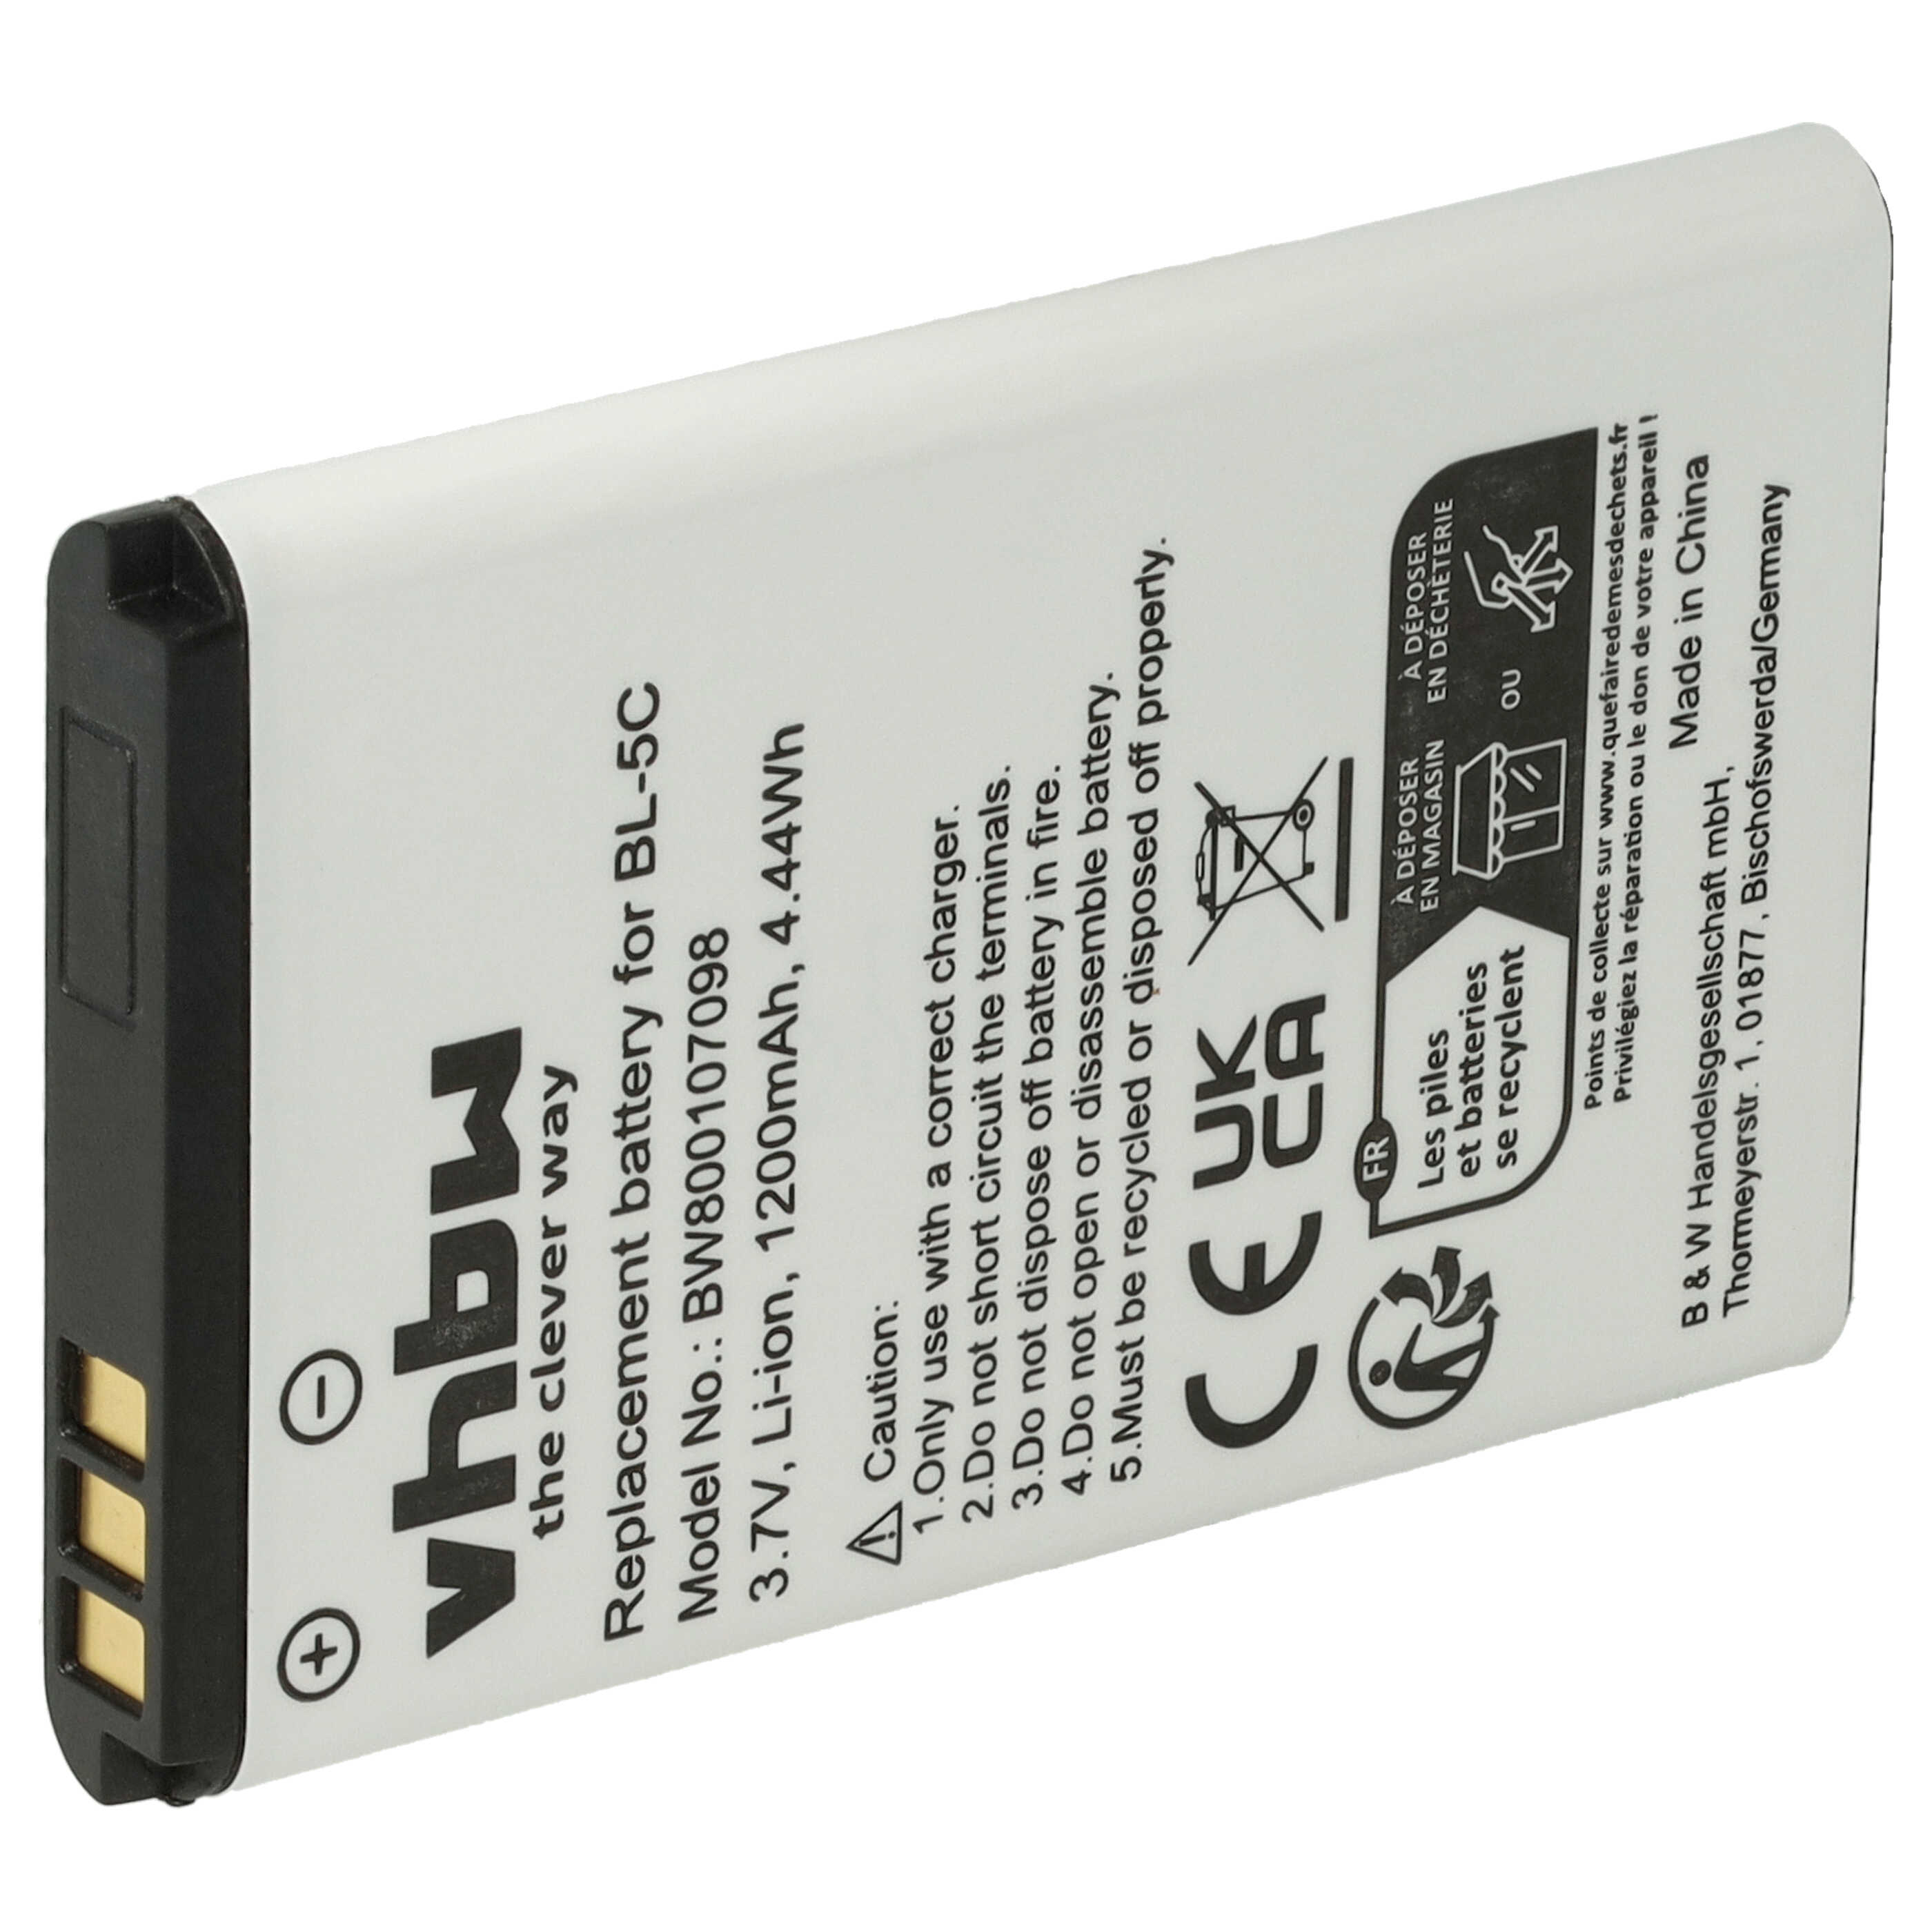 Batterie remplace Shoretel 300-1032, SH-10450, 10000058 pour téléphone - 1200mAh 3,7V Li-ion